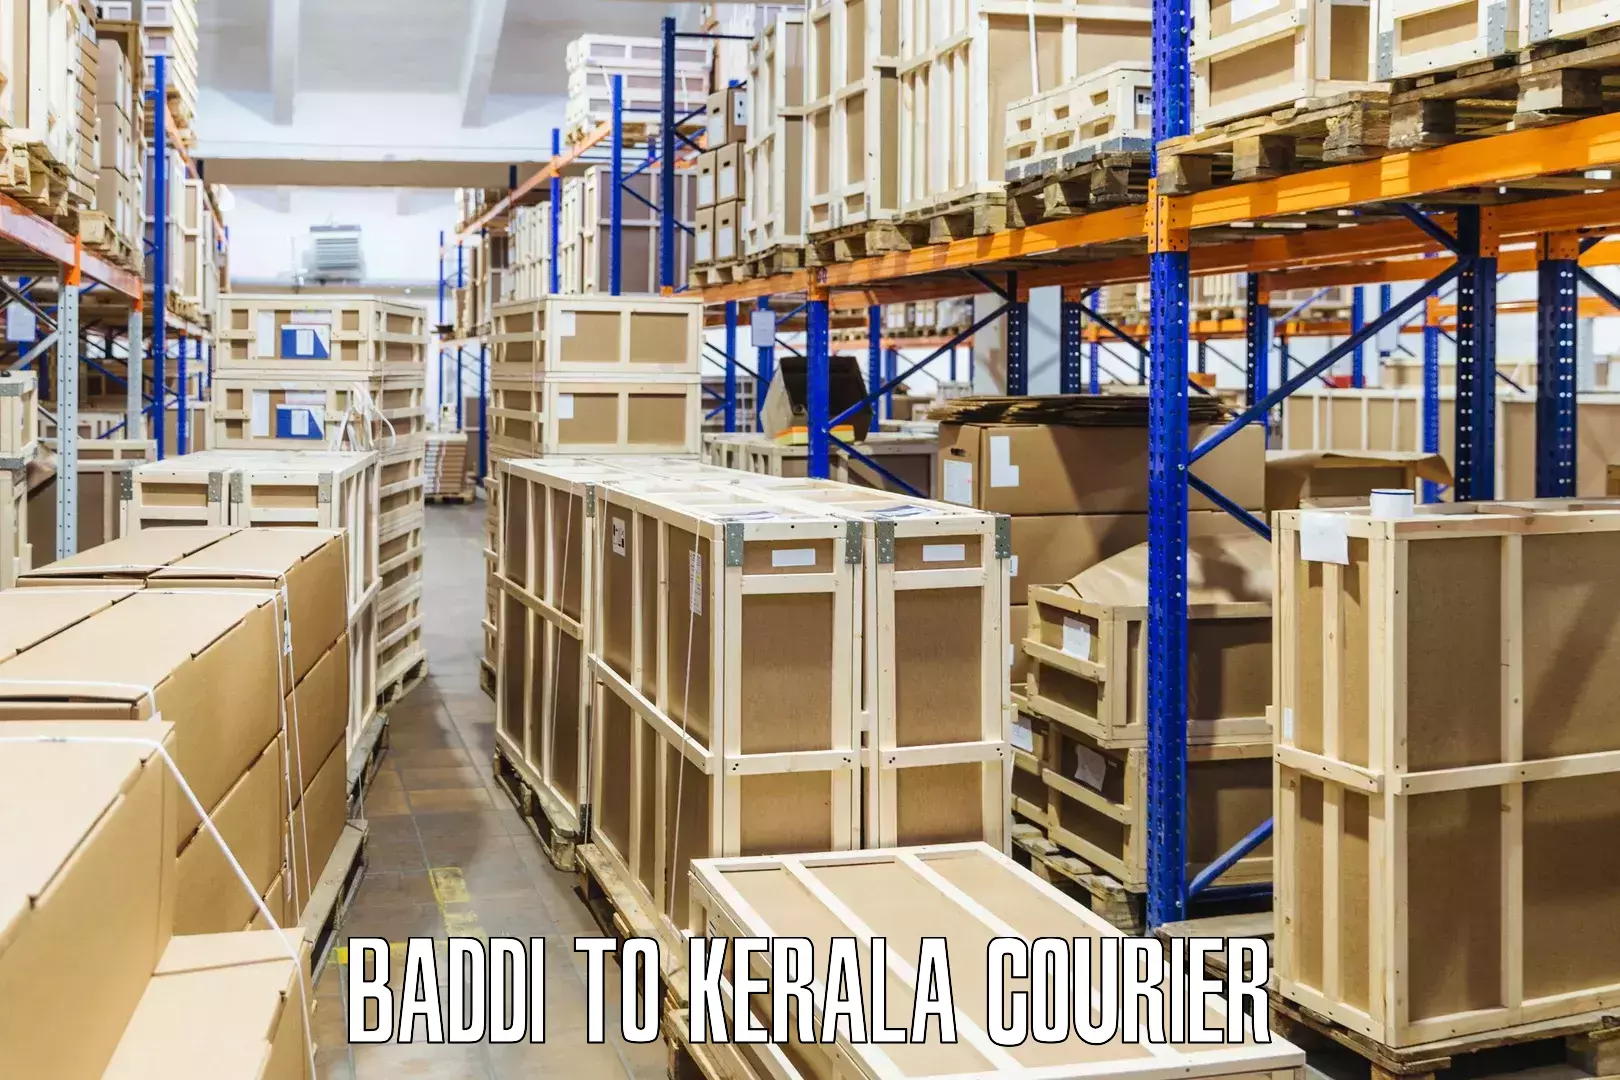 Sustainable courier practices Baddi to Guruvayur